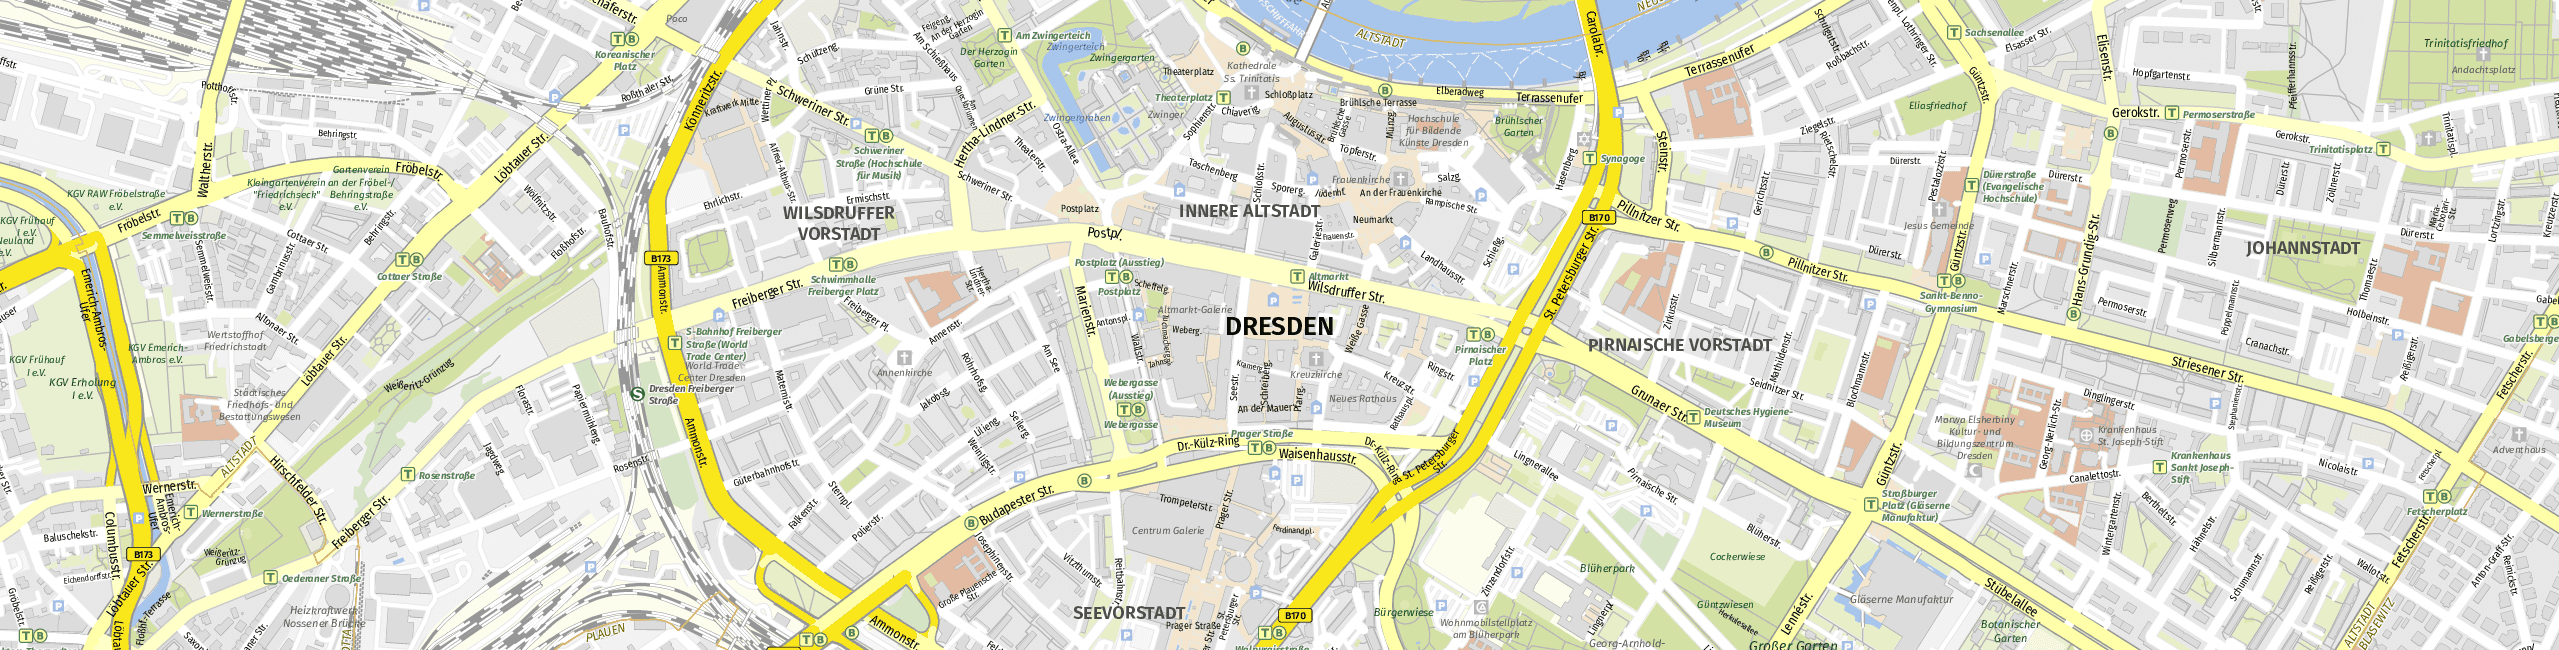 Stadtplan Dresden zum Downloaden.